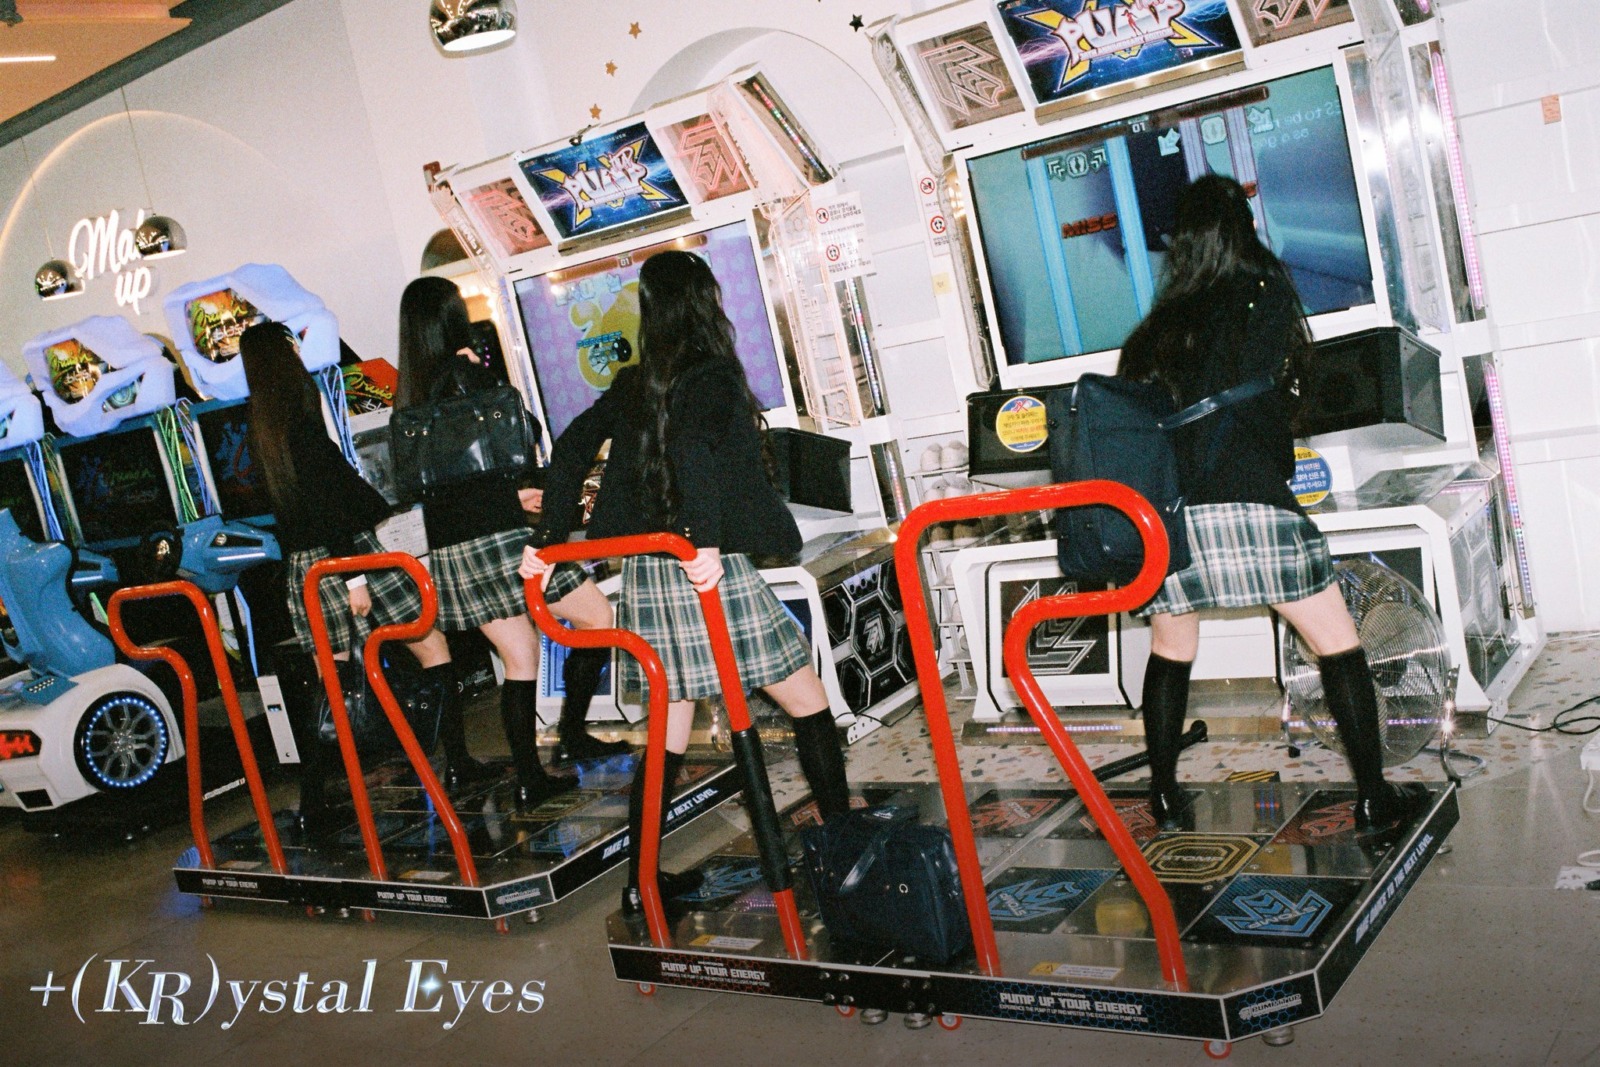 tripleS +(KR)ystal Eyes 「AESTHETIC」
tripleS +(KR)ystal Eyes 「Cherry Talk」
tripleS / +(KR)ystal Eyes (クリスタルアイズ)
ユン・ソヨン (Yoon Seoyeon / 윤서연)
キム・スミン (Kim Soomin / 김수민)
キム・チェヨン (Kim Chaeyeon / 김채연)
イ・ジウ (Lee Jiwoo / 이지우)